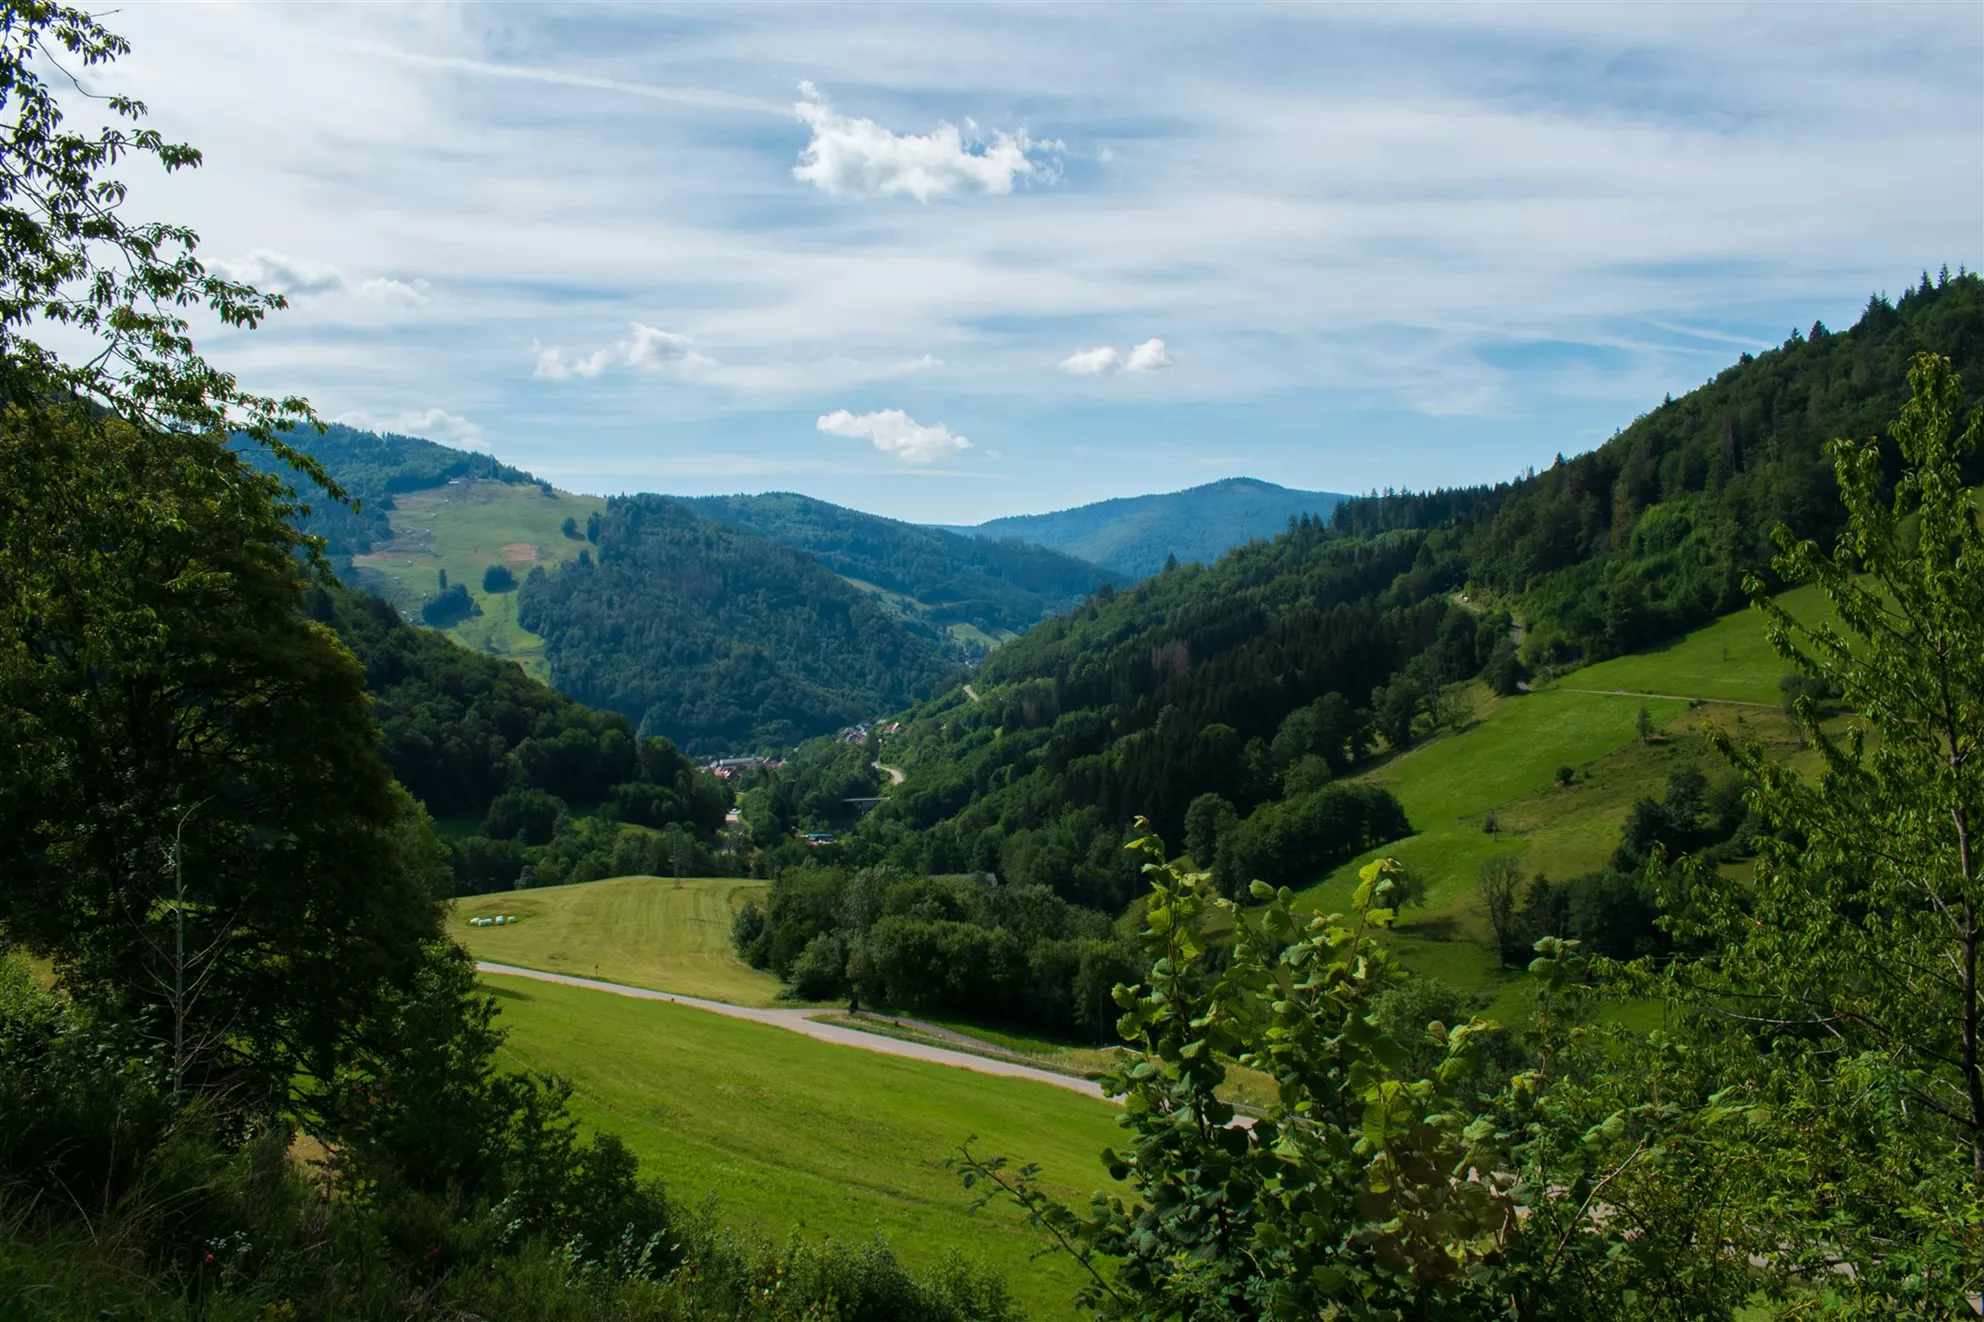 Saftig grüne Landschaften - so präsentiert sich der Schwarzwald seinen Besuchern